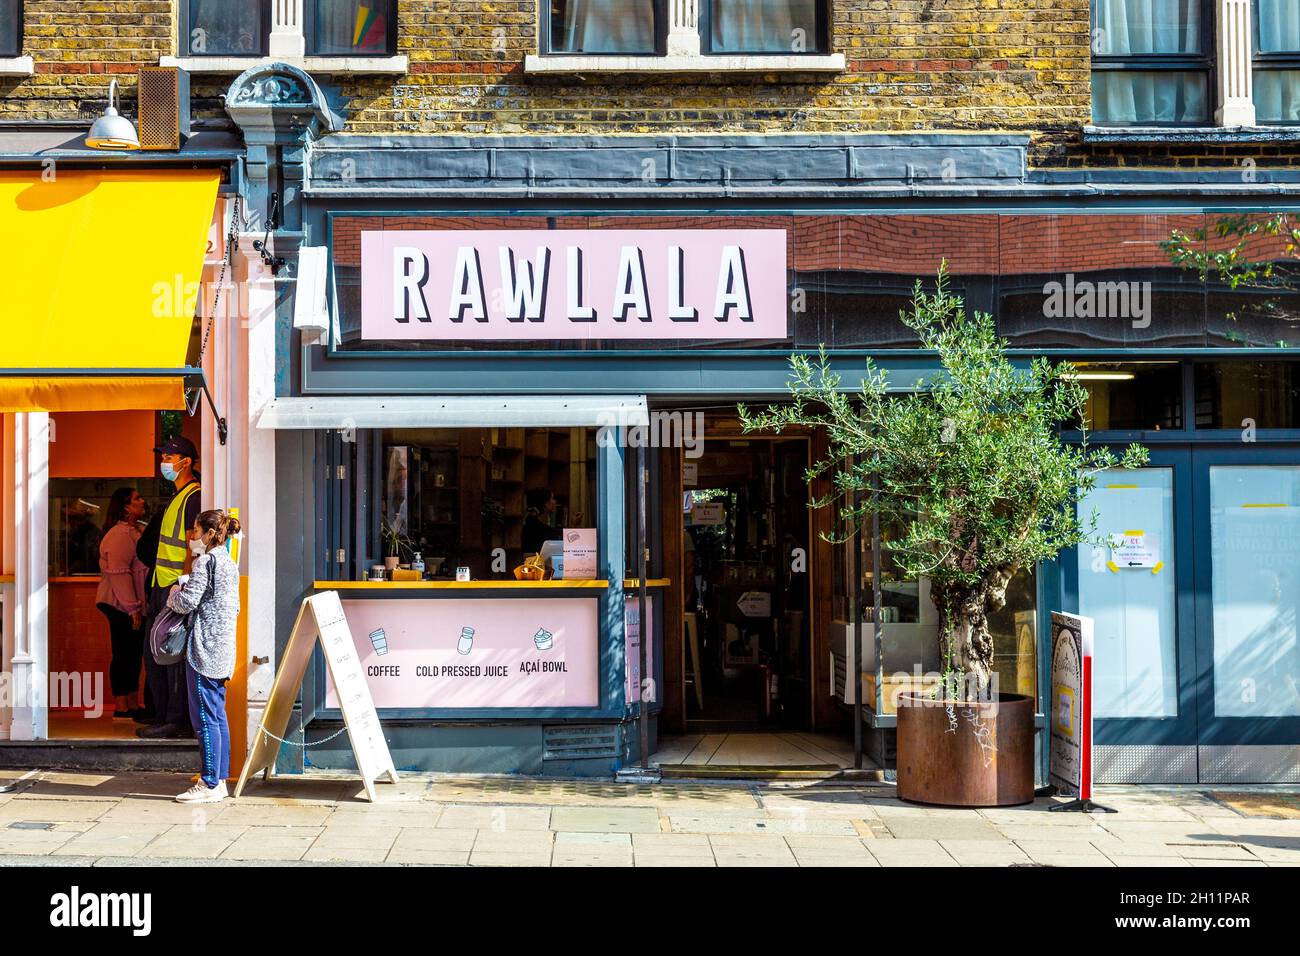 Rawlala cafe offre torte vegane biologiche crude su Charing Cross Road, Londra, Regno Unito Foto Stock